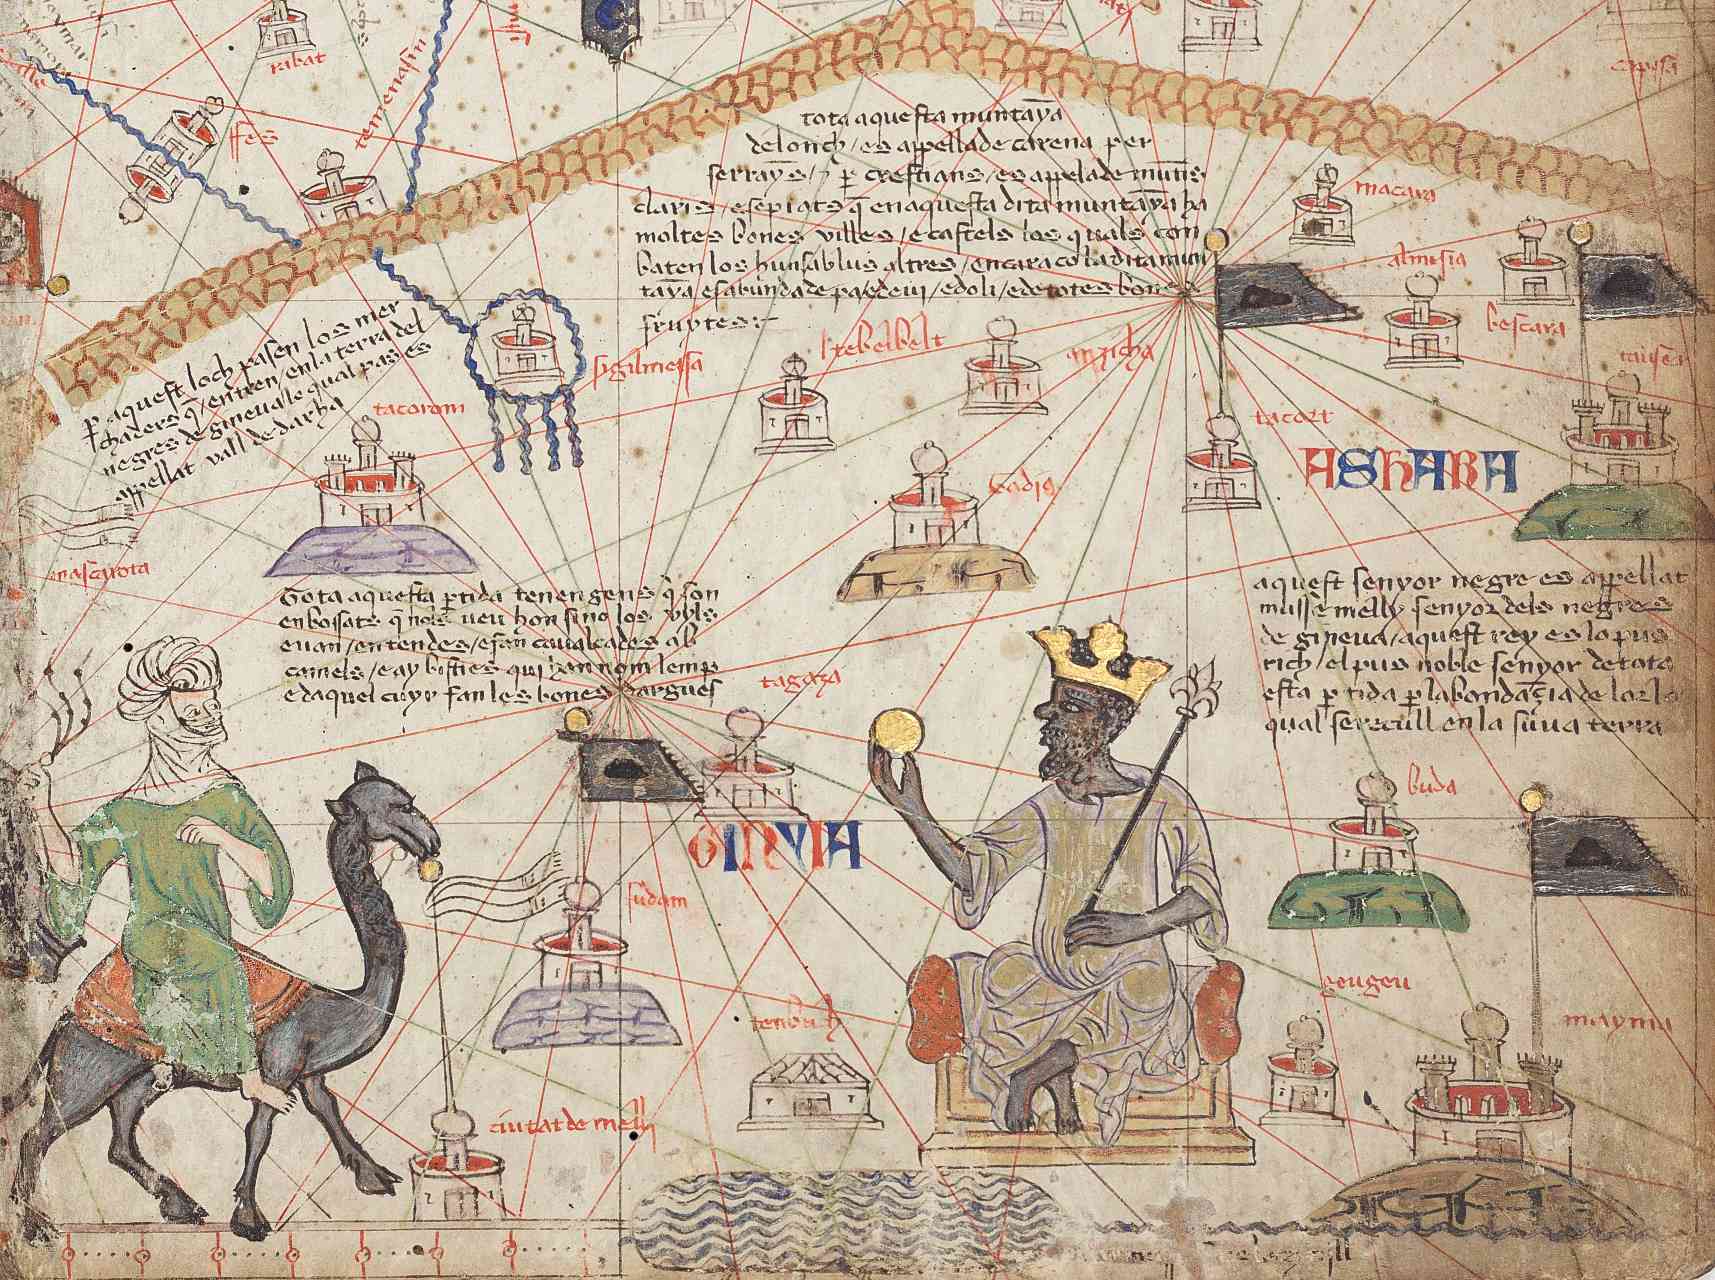 Ausschnitt aus dem katalanischen Atlas Blatt 6, der die Westsahara zeigt. Das Atlasgebirge liegt oben und der Fluss Niger unten. Mansa Musa sitzt auf einem Thron und hält eine Goldmünze.